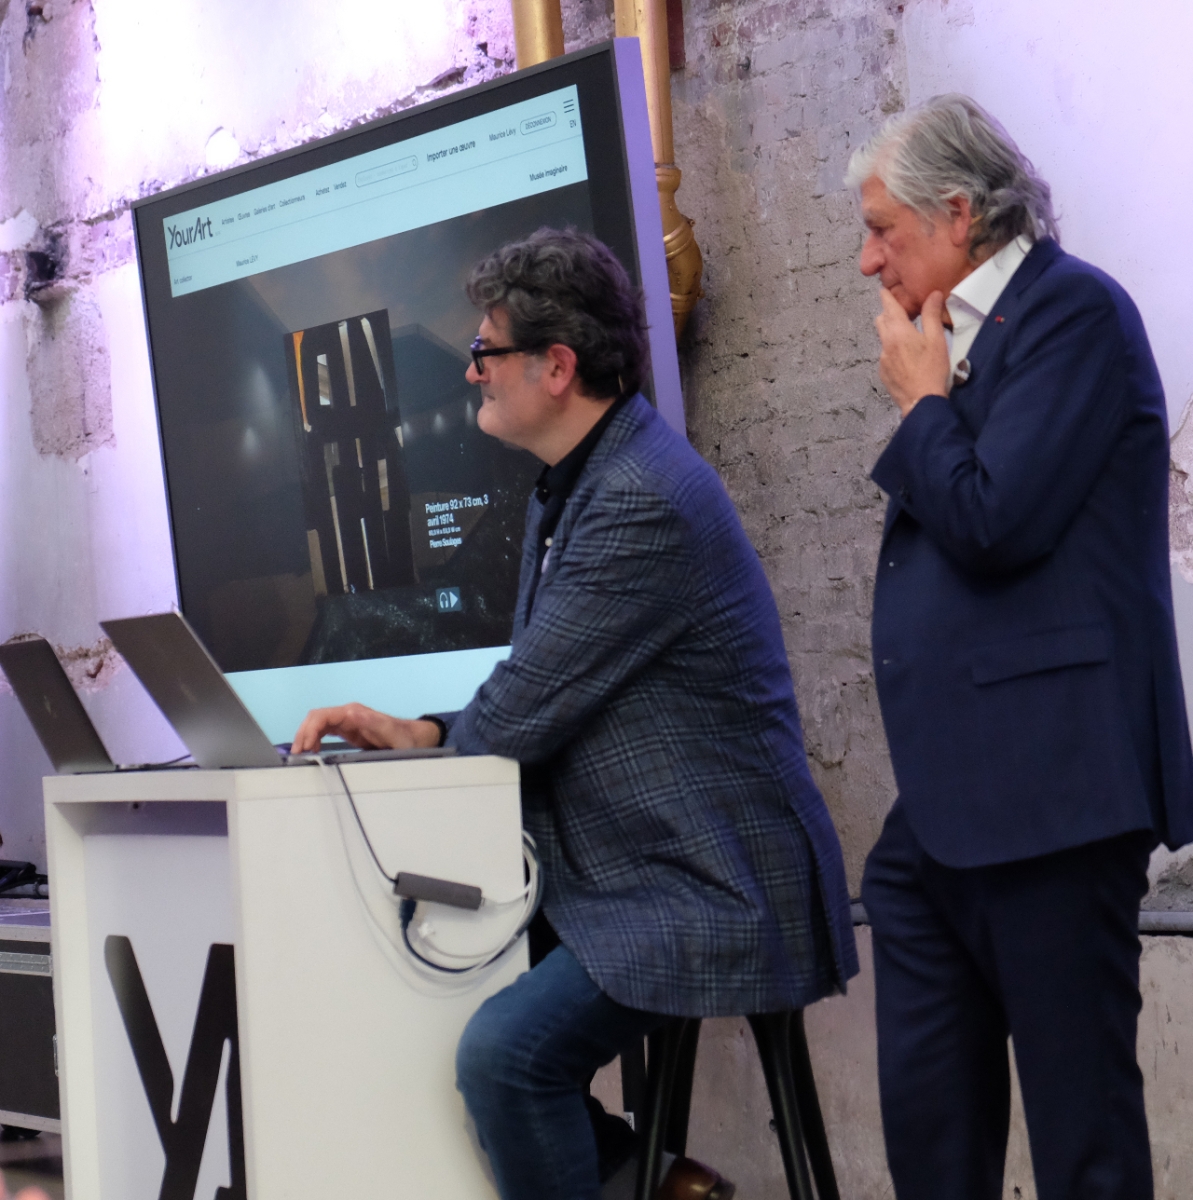 Stéphane et Maurice Lévy visitent leurs musées imaginaires sur Yourart